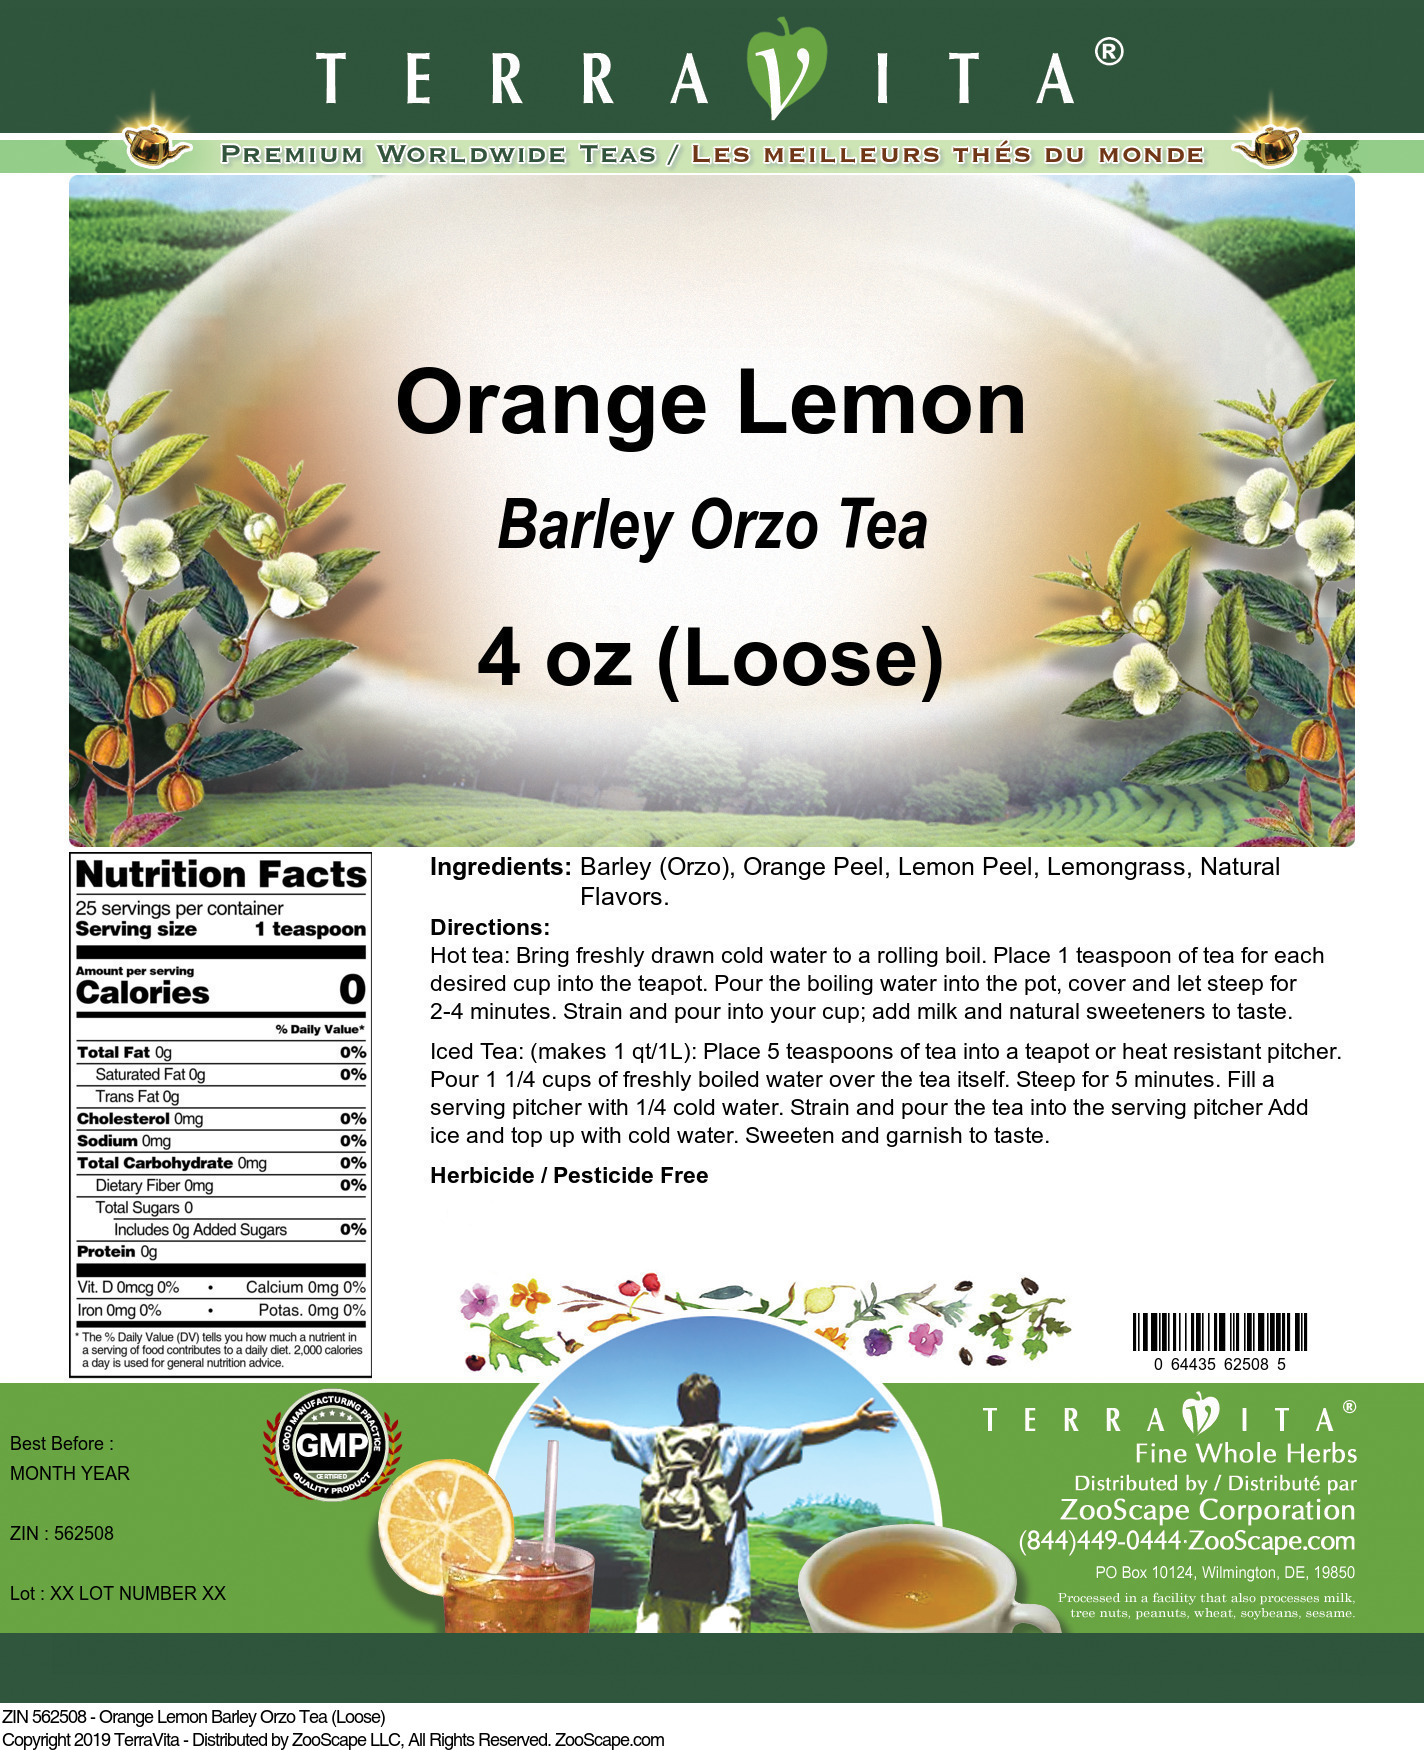 Orange Lemon Barley Orzo Tea (Loose) - Label